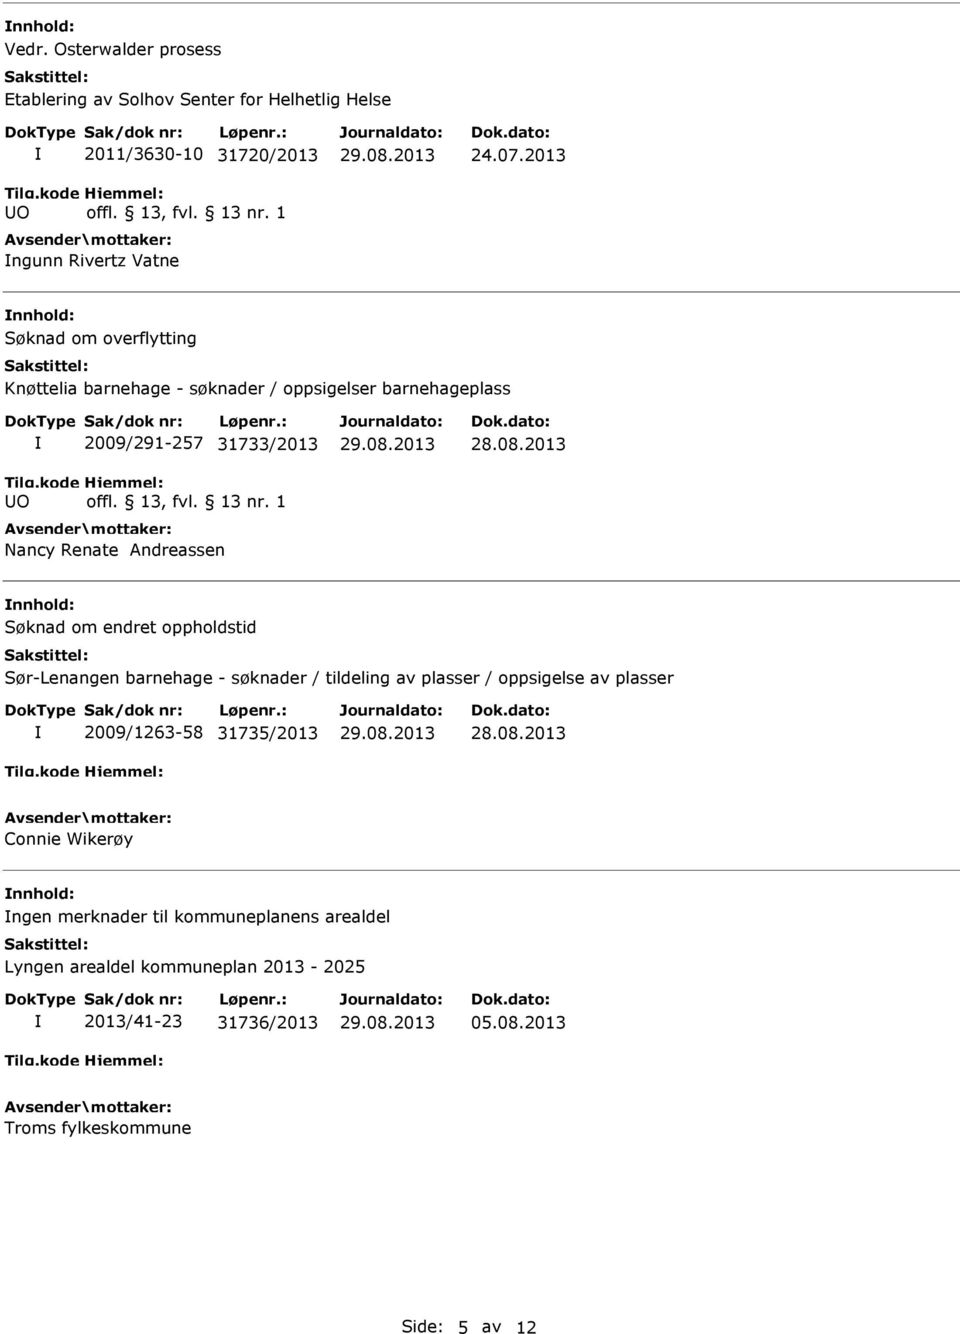 Søknad om endret oppholdstid Sør-Lenangen barnehage - søknader / tildeling av plasser / oppsigelse av plasser 2009/1263-58 31735/2013